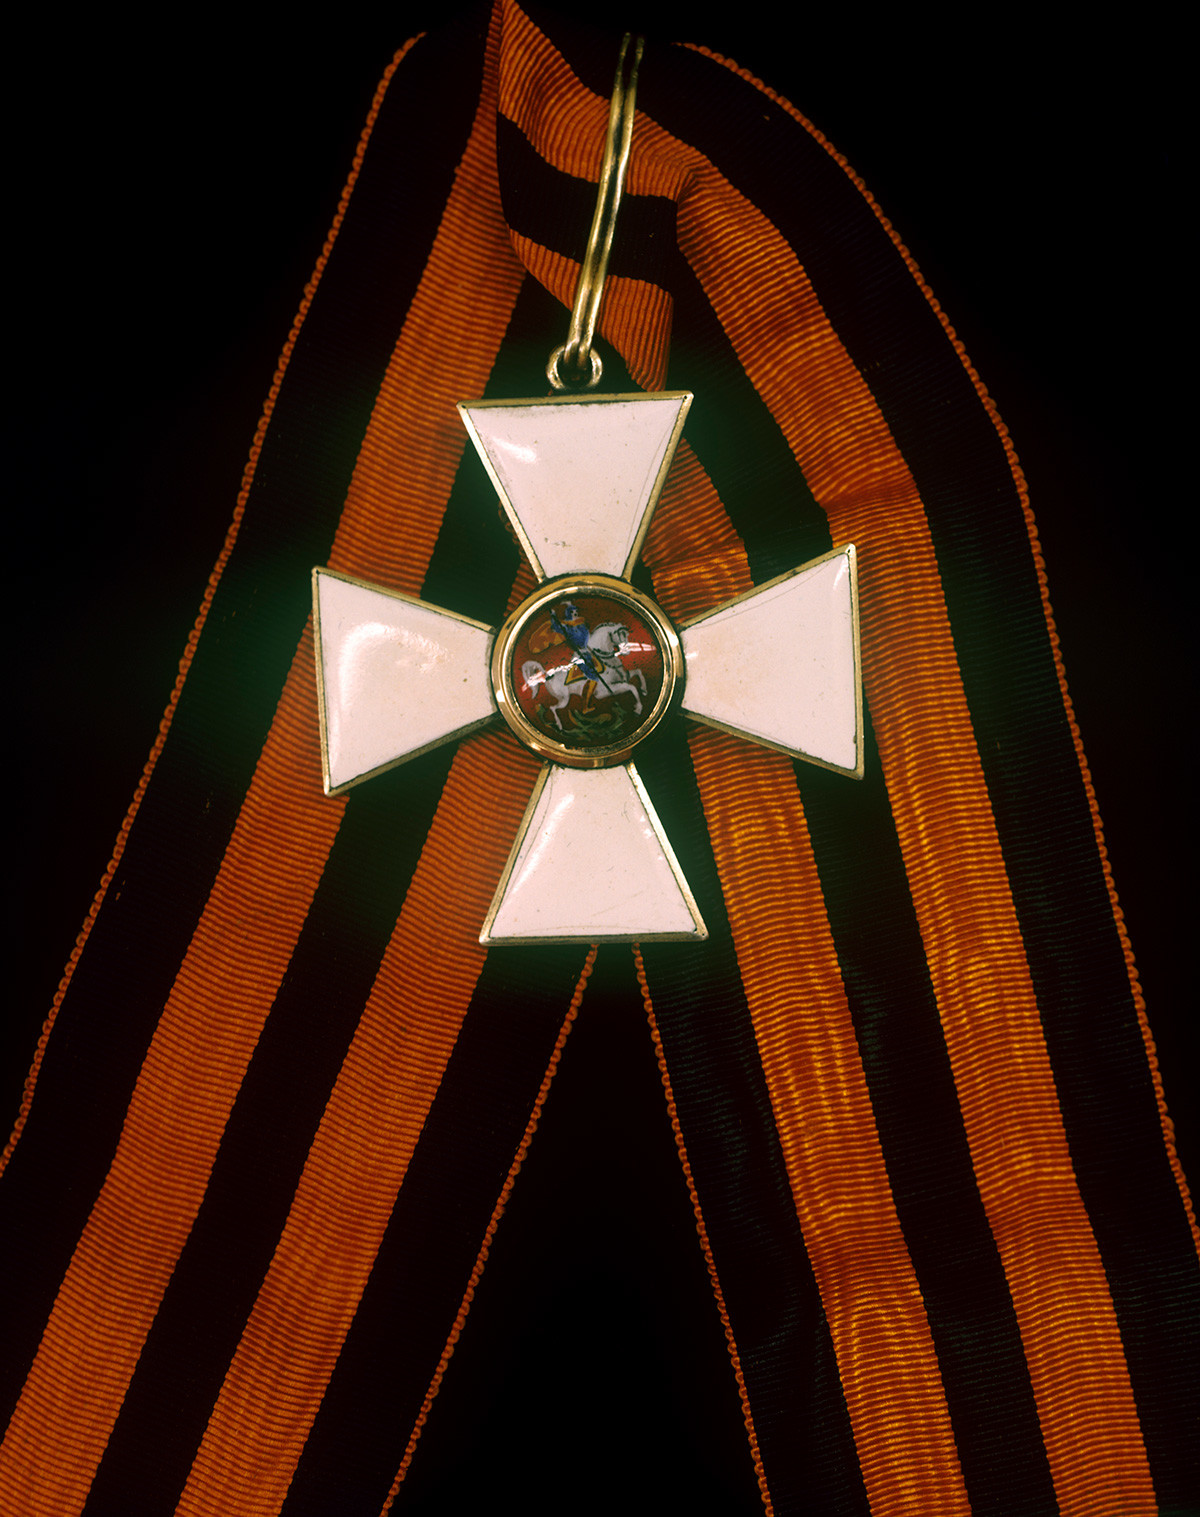 聖ゲオルギー勲章のリボンはオレンジ色で、3本の黒いストライプがあり、ロシアの「軍事的栄光の色」である火と火薬を象徴している。